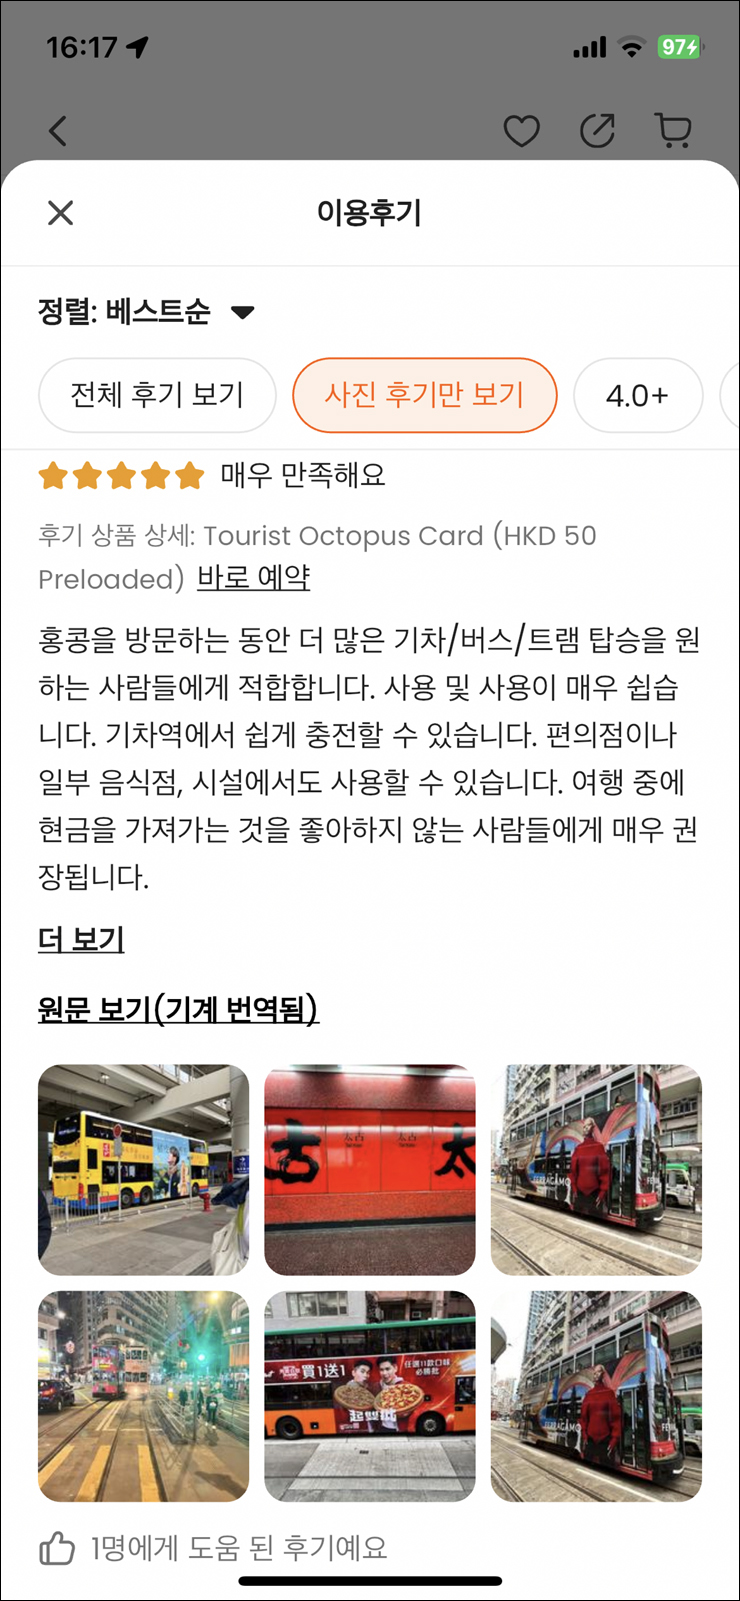 홍콩여행 준비물 홍콩 옥토퍼스카드 구매 수령 홍콩 지하철 노선도